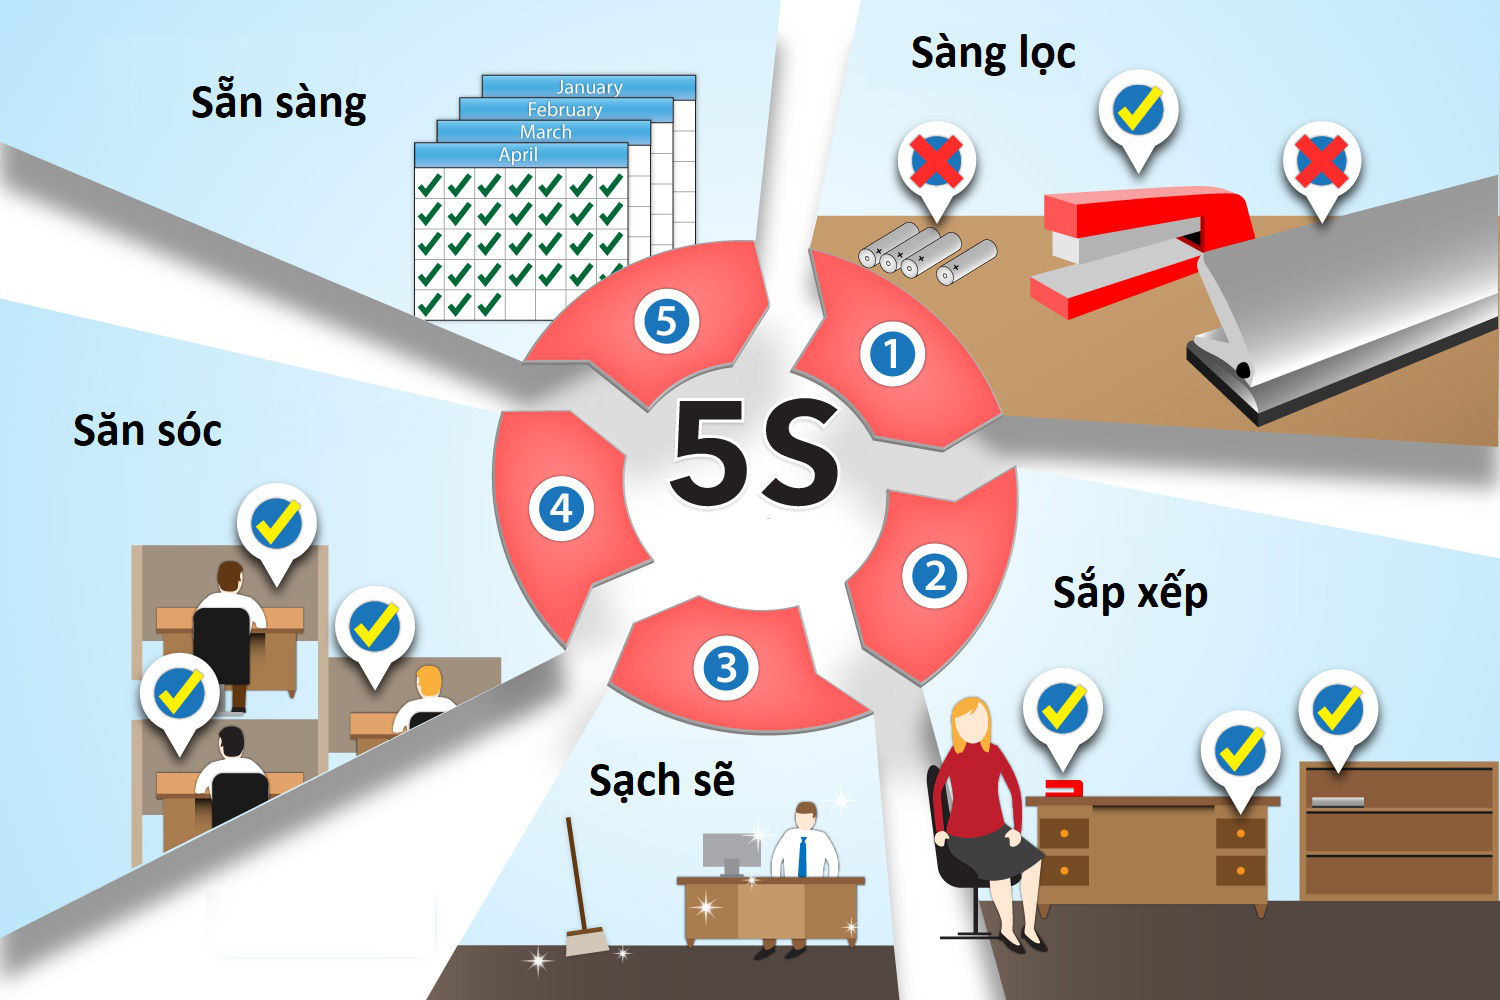 Phương pháp làm việc hiệu quả 5S: Phương pháp 5S giúp sắp xếp và tăng hiệu quả làm việc của công việc. Để biết cách thực hiện 5S hiệu quả cho công việc của mình, hãy xem hình ảnh liên quan.